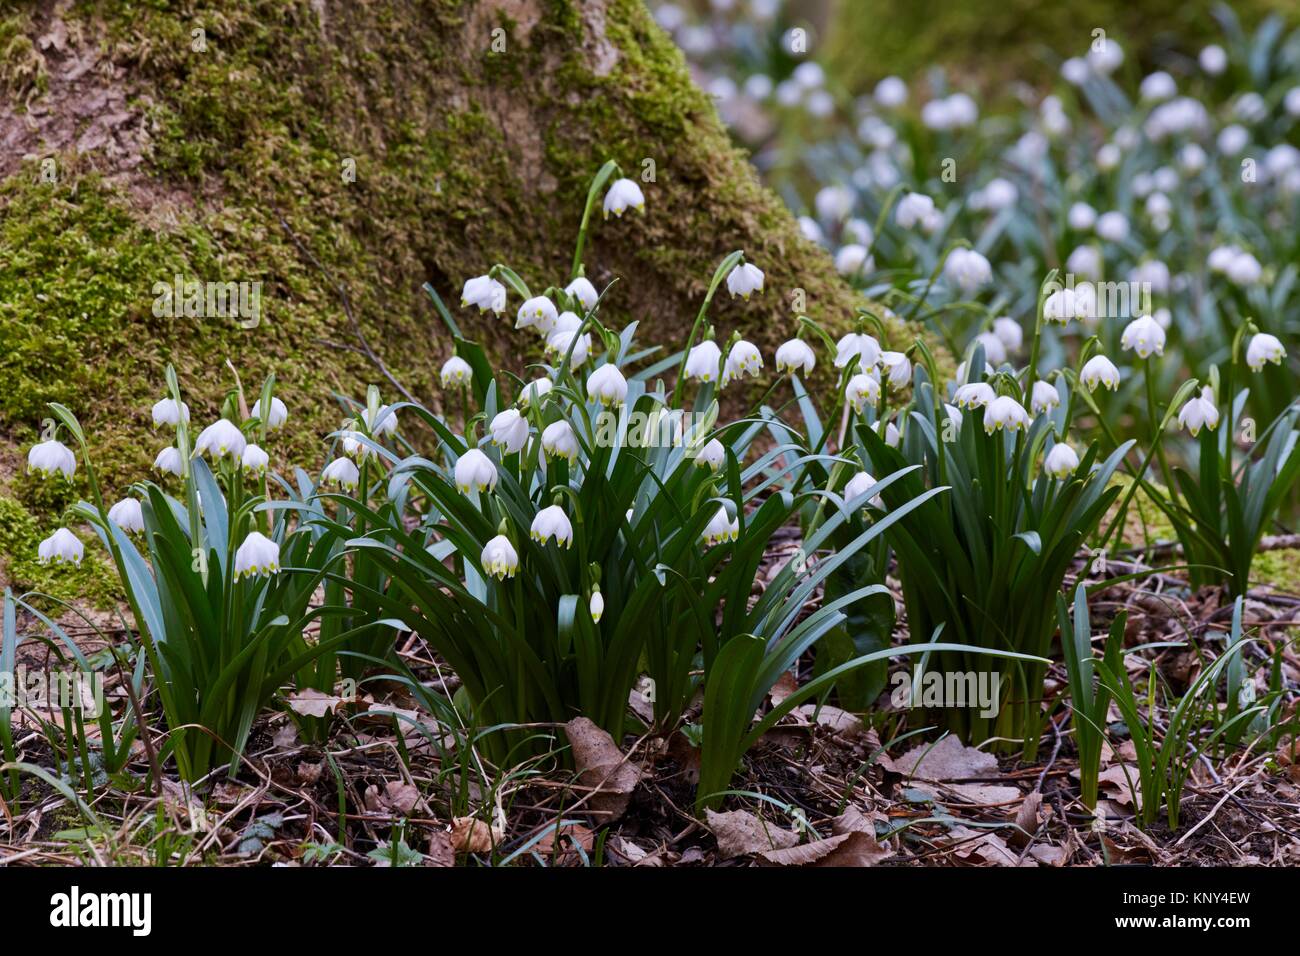 Los copos de nieve de primavera (Leucojum vernum) florece en bosques caducifolios en húmedos y mojados, ricos en nutrientes y moderadamente ácidos y fértiles suelos arcillosos - Foto de stock